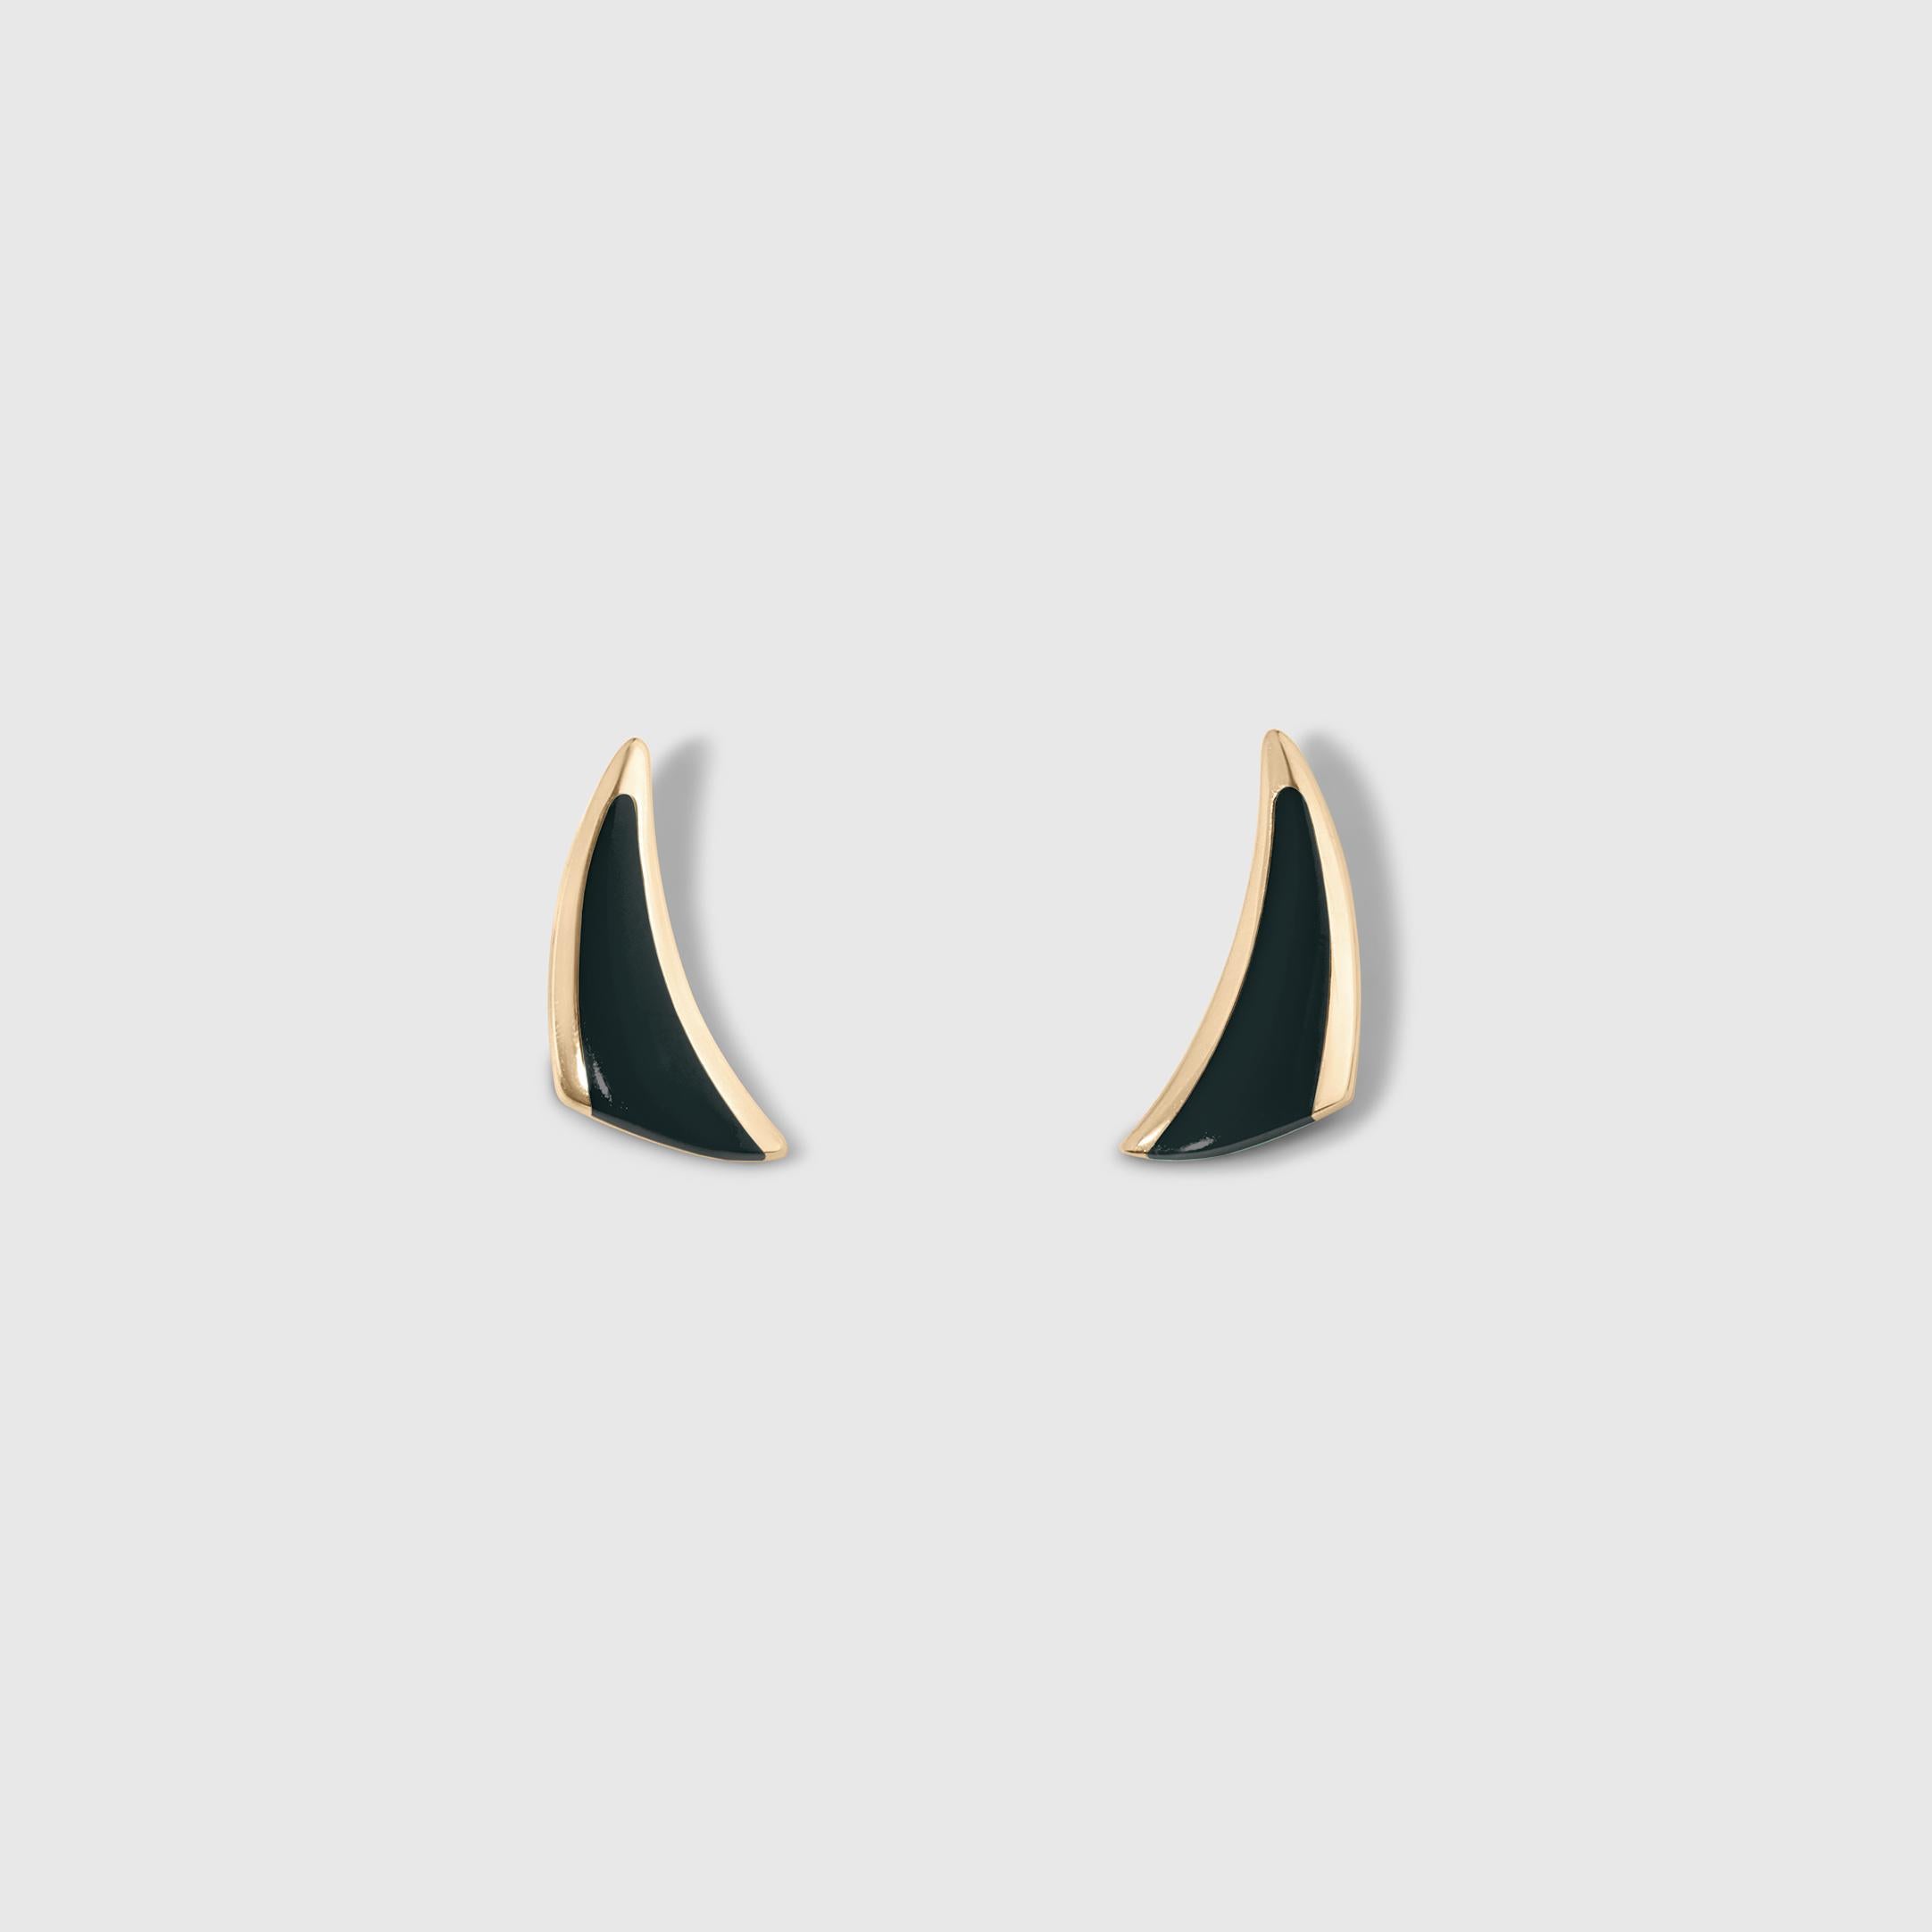 Boucles d'oreilles Triangle avec incrustation d'onyx noir, or jaune 14kt par Kabana

Tous les designs peuvent être commandés sur mesure dans de nombreuses pierres de Kabana, notamment : la turquoise de la beauté du sommeil, la turquoise, l'opale